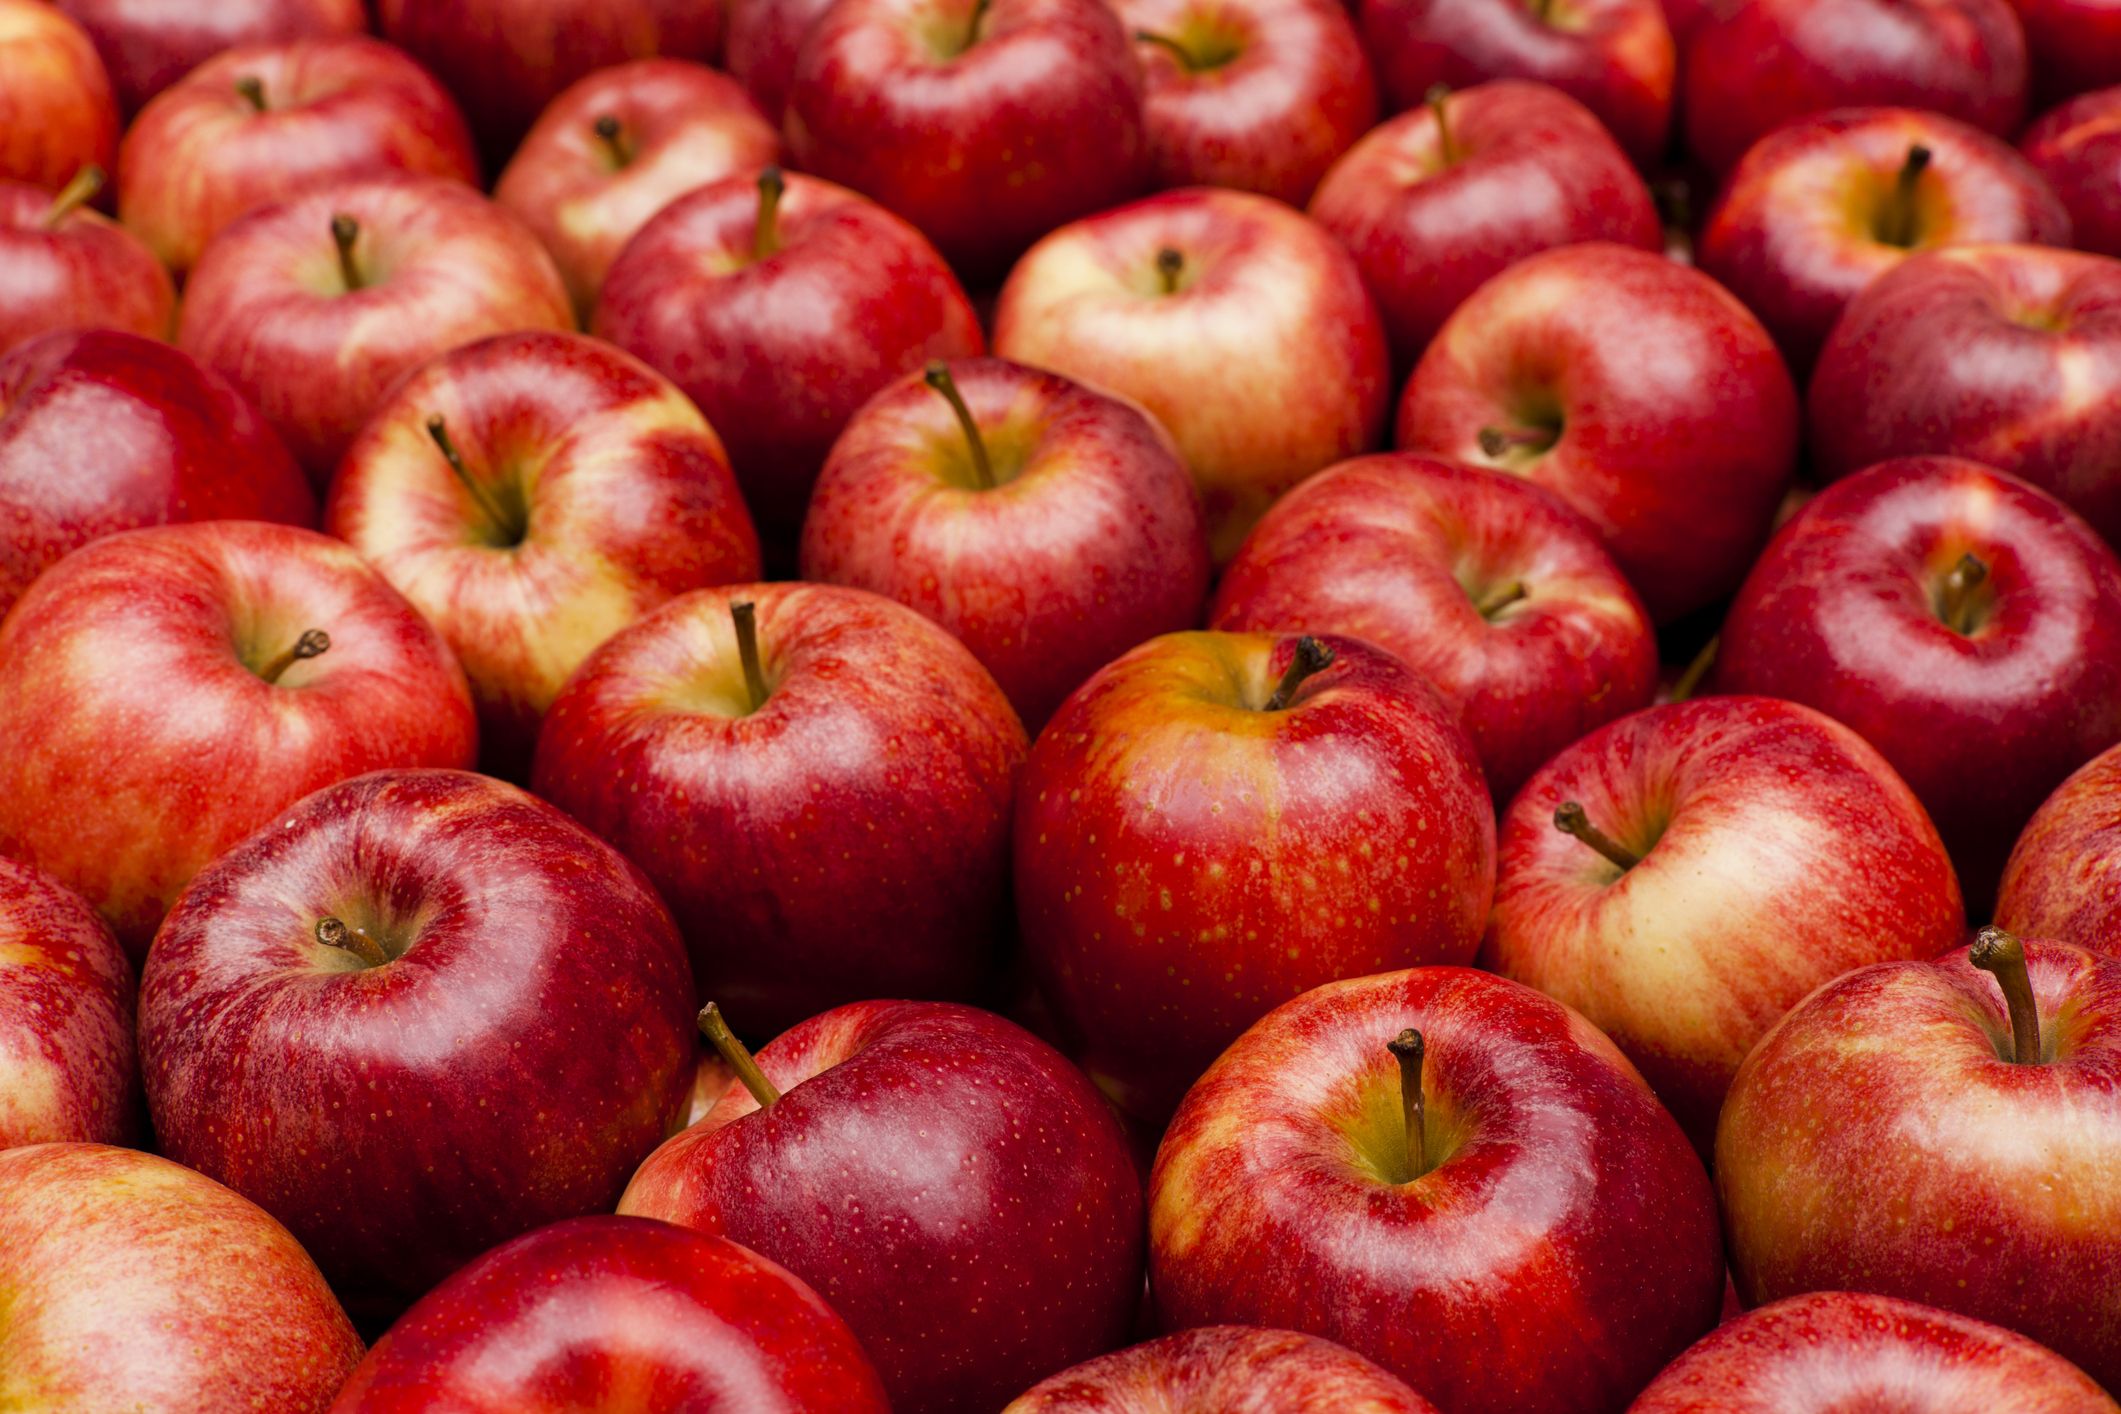 Çürük Elmalardan Meyve Suyu Yapılacağı İddiası Üzerine İnceleme Başlatıldı